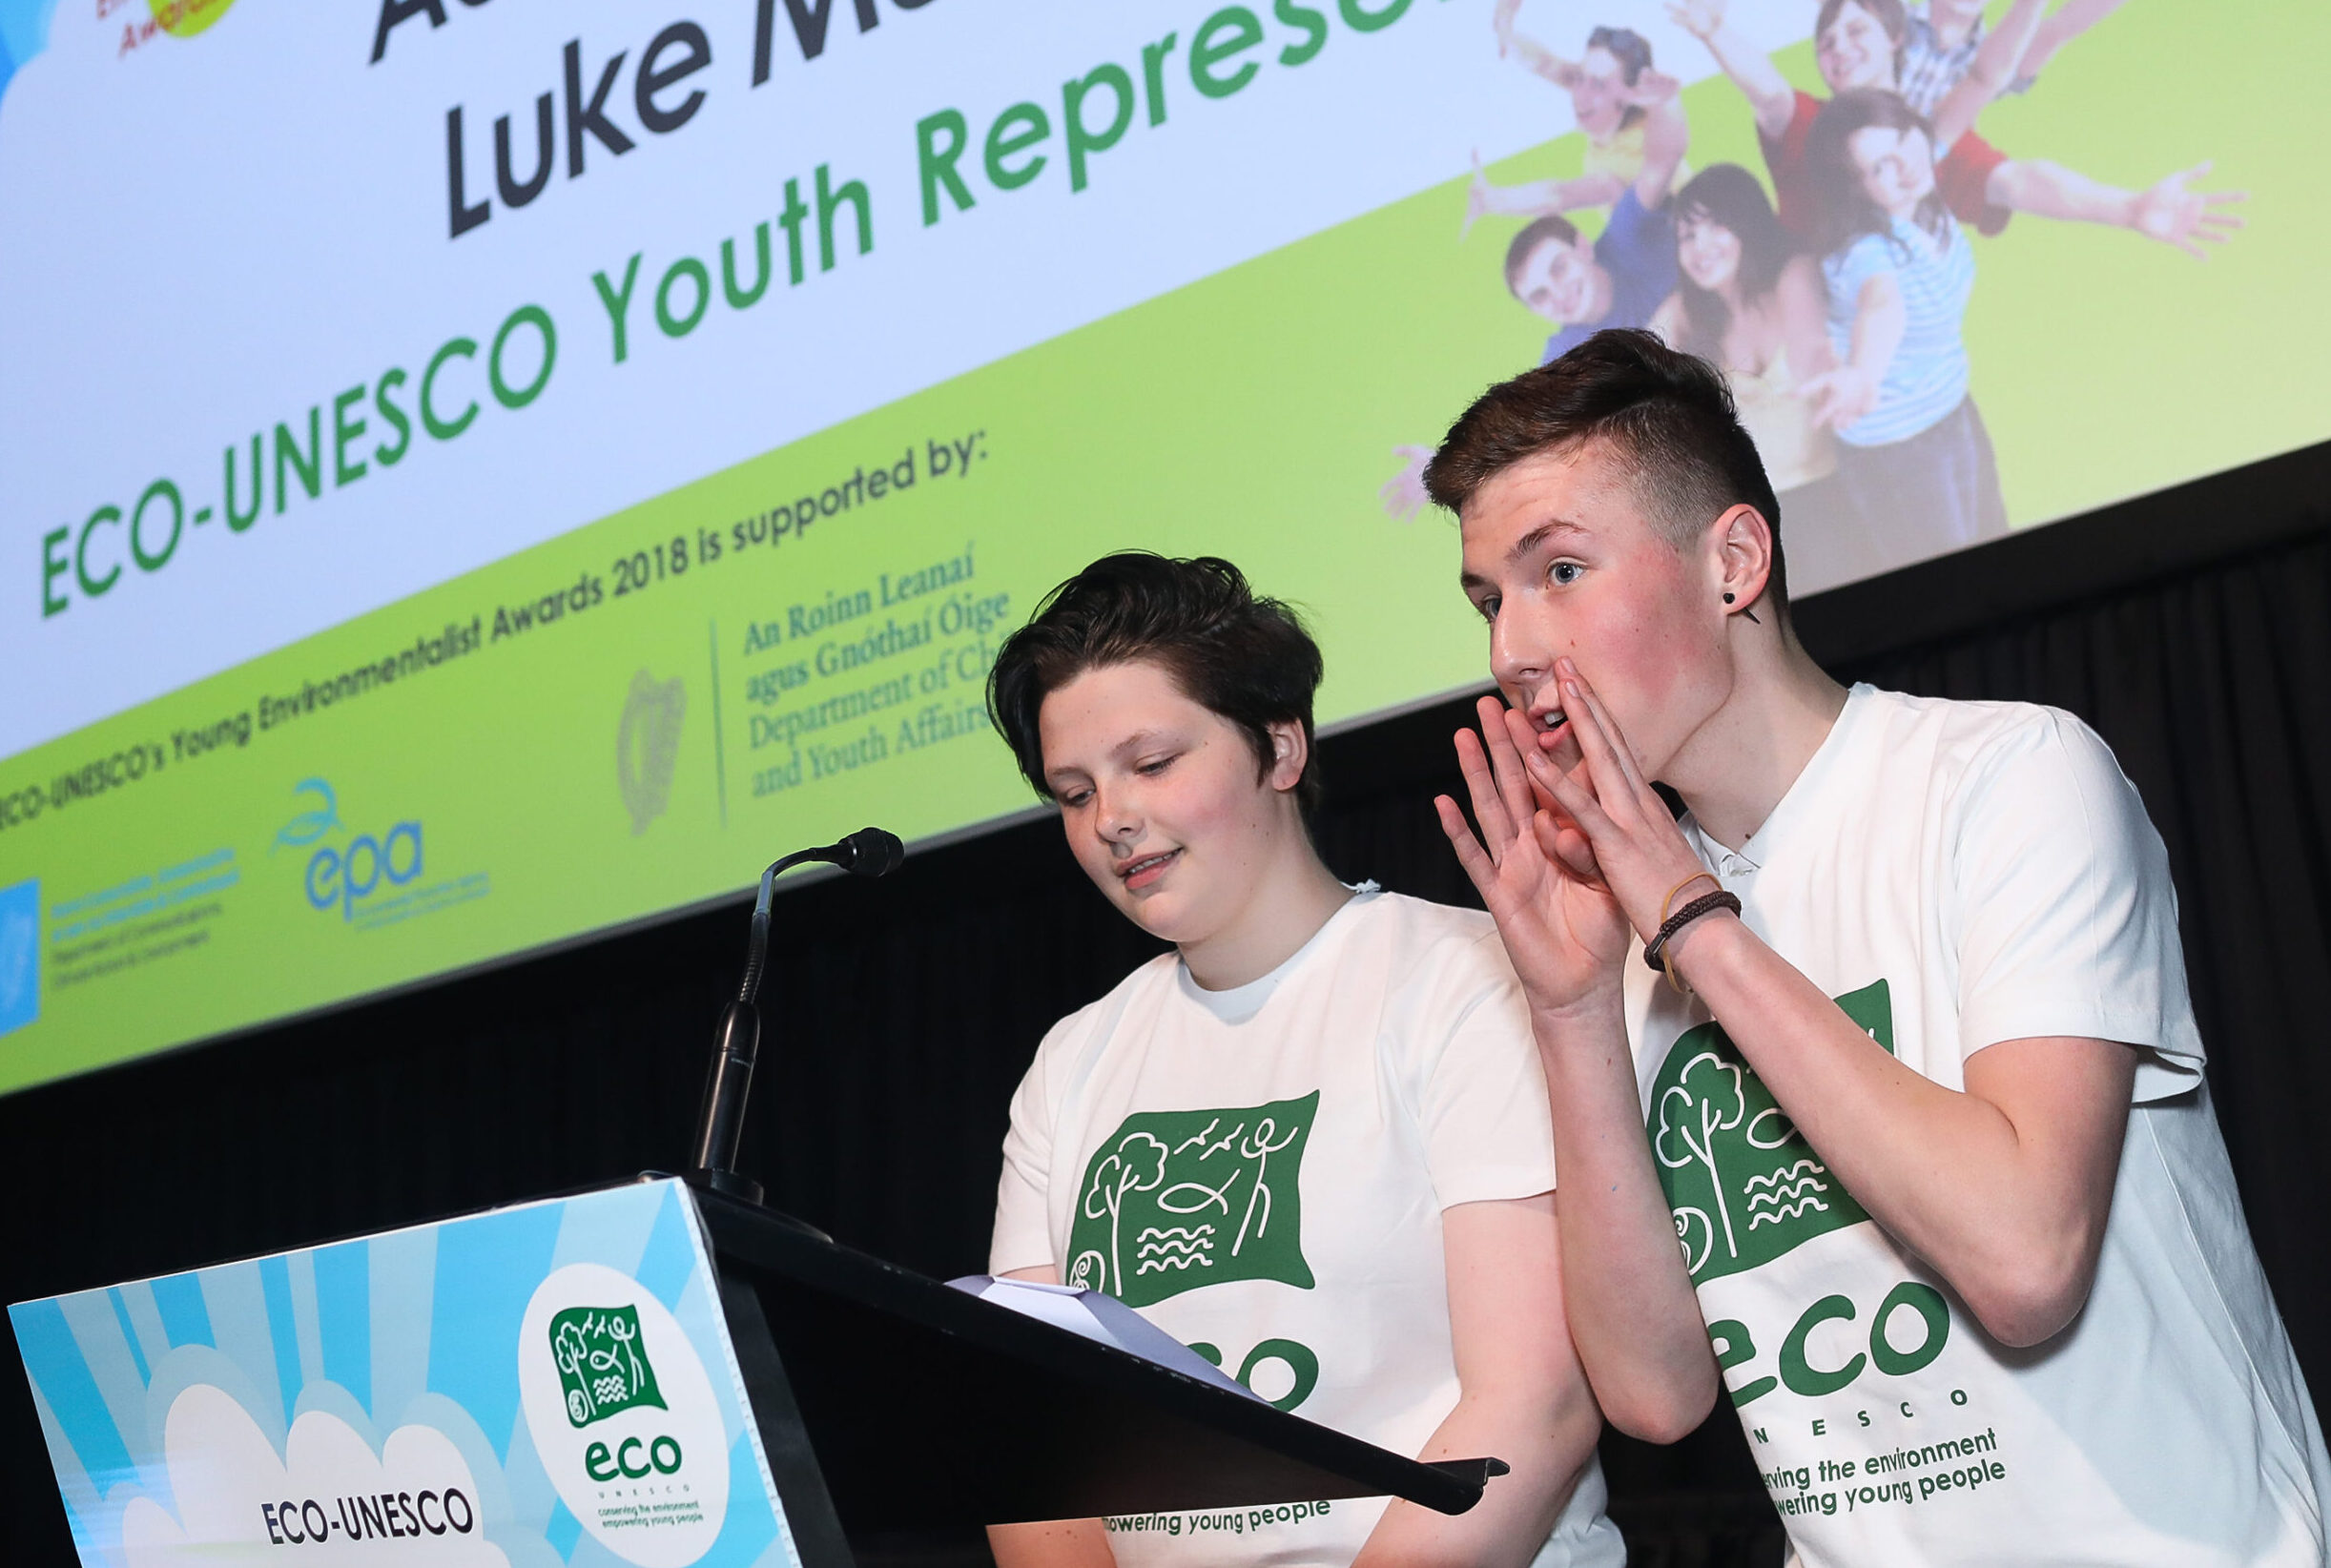 22/05/2018 ECO-UNESCO YOUNG ENVIRONMENTALIST AWARDS 2018 - MANSION HOUSE, DUBLIN.
PHOTO SHOWS:  ECO-UNESCO Youth Representatives, Aoife Bullock & Luke Murray.
PHOTO: CONOR Ó MEARÁIN - NO REPRO FEE